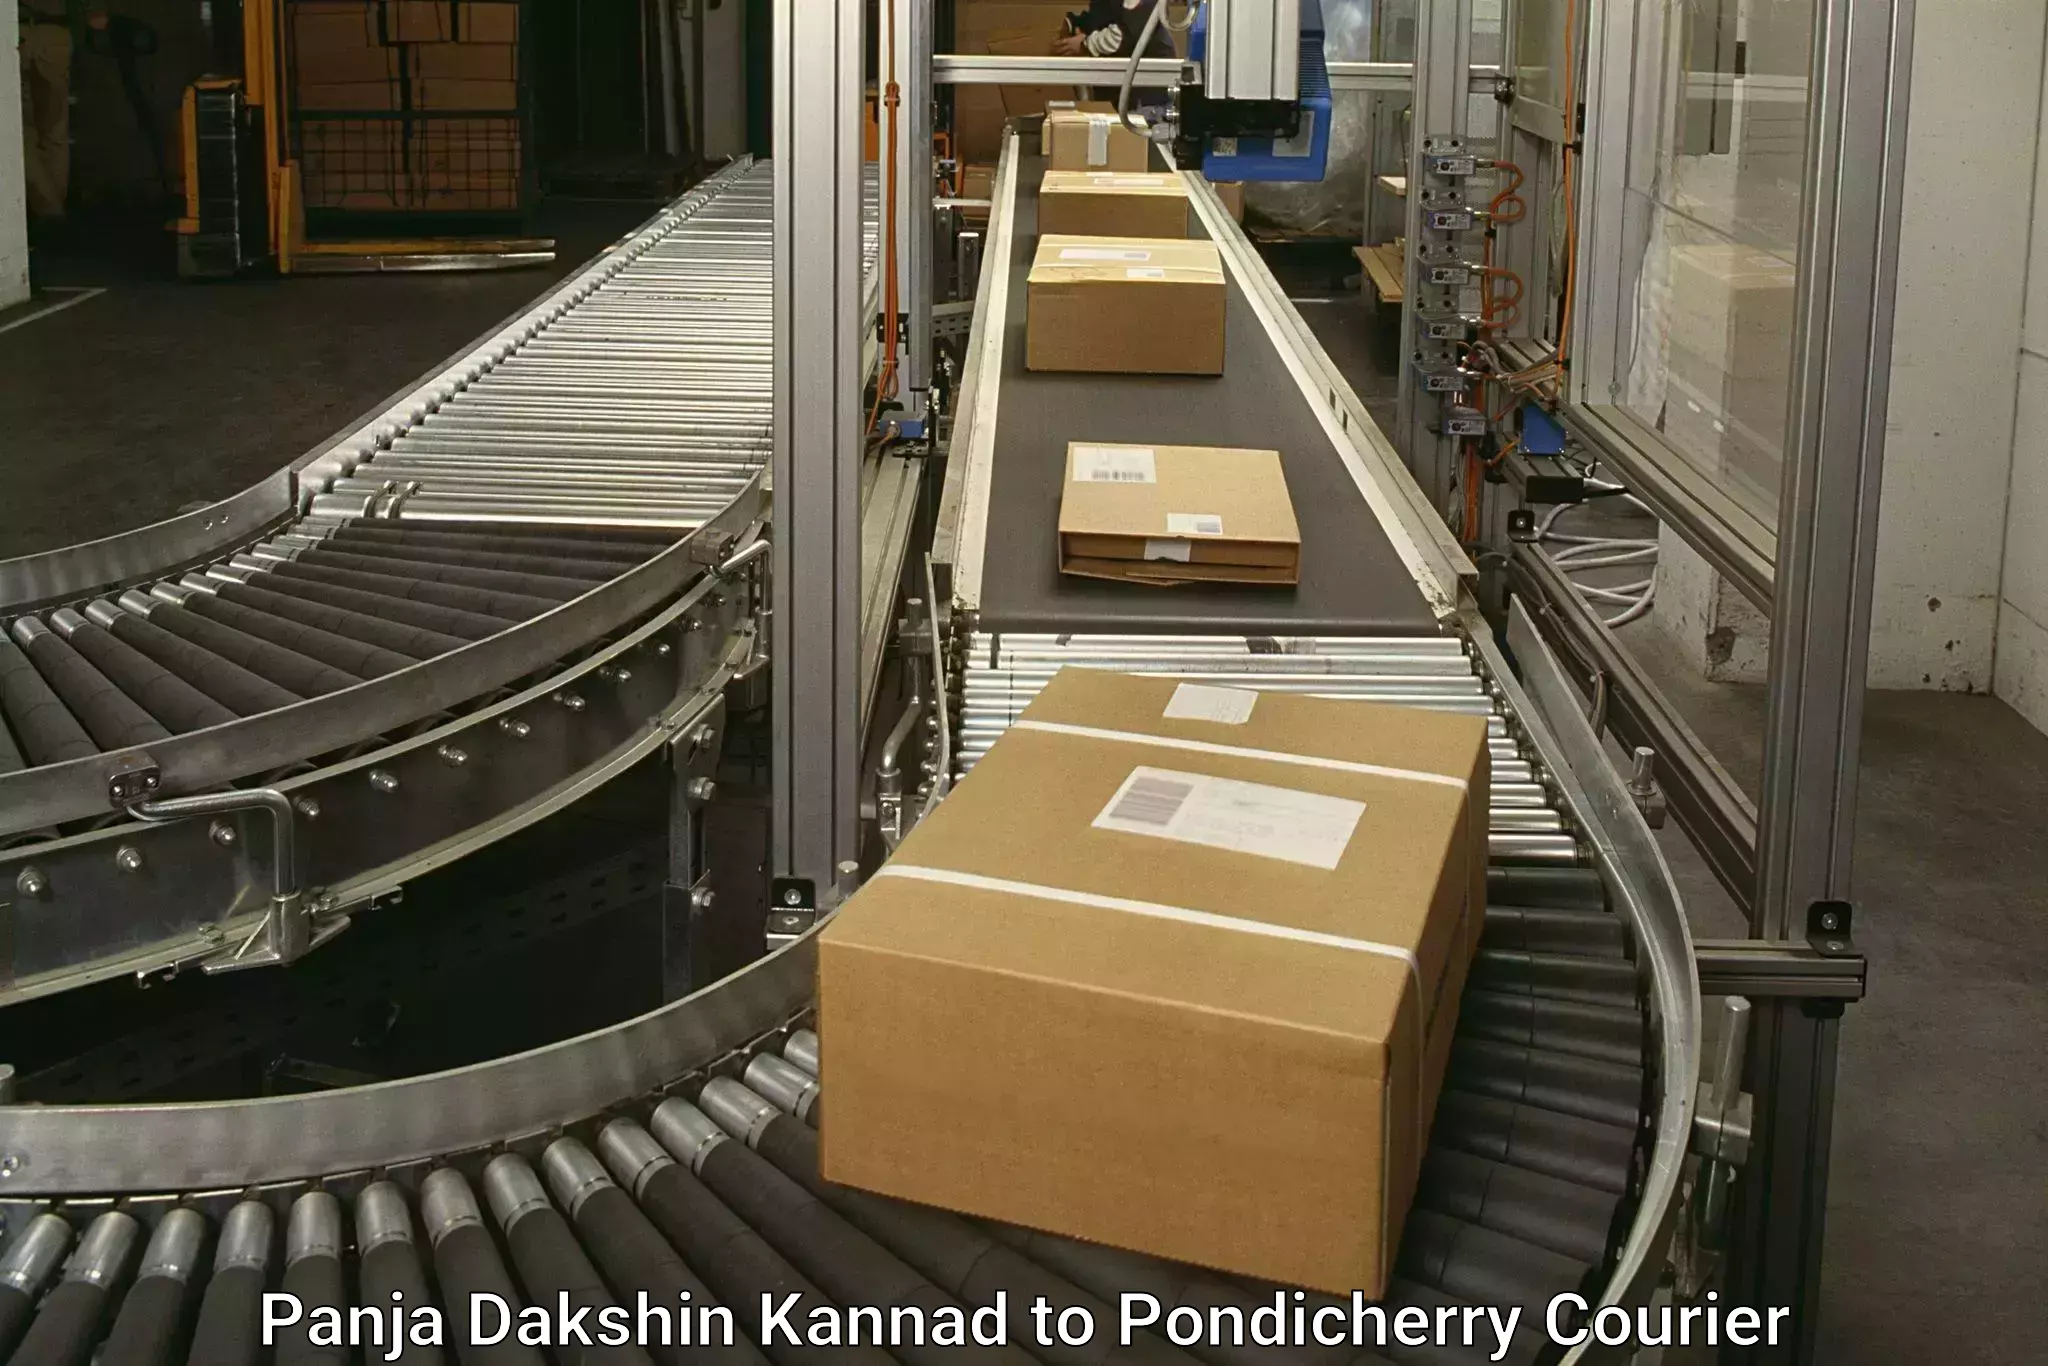 Advanced shipping technology Panja Dakshin Kannad to NIT Puducherry